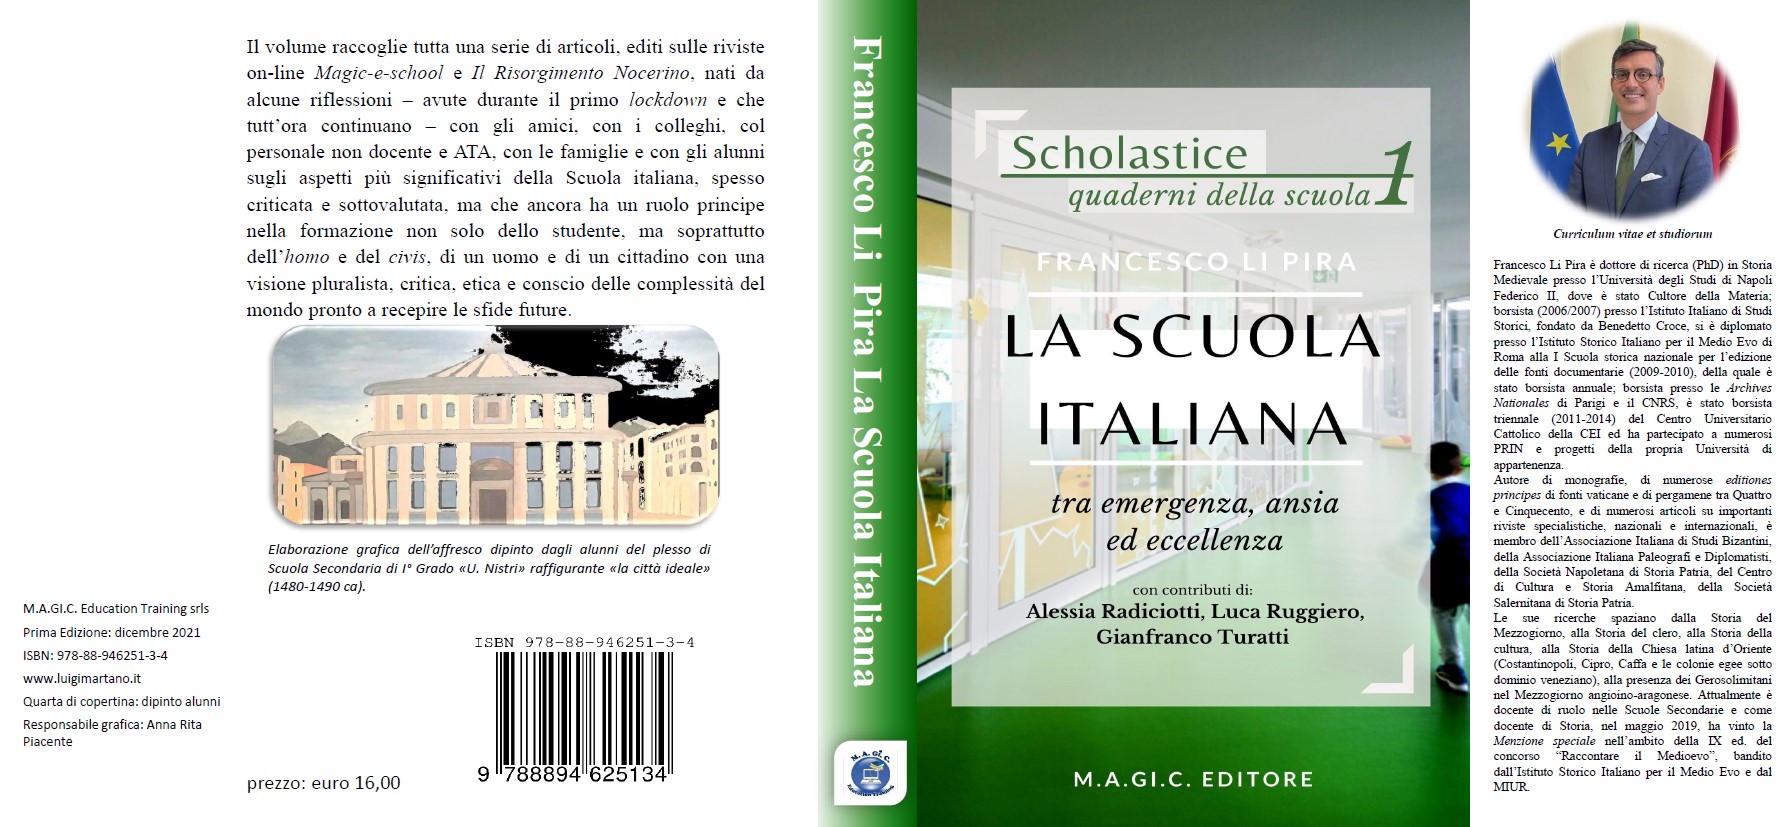 Copertina del libro "La scuola italiana"